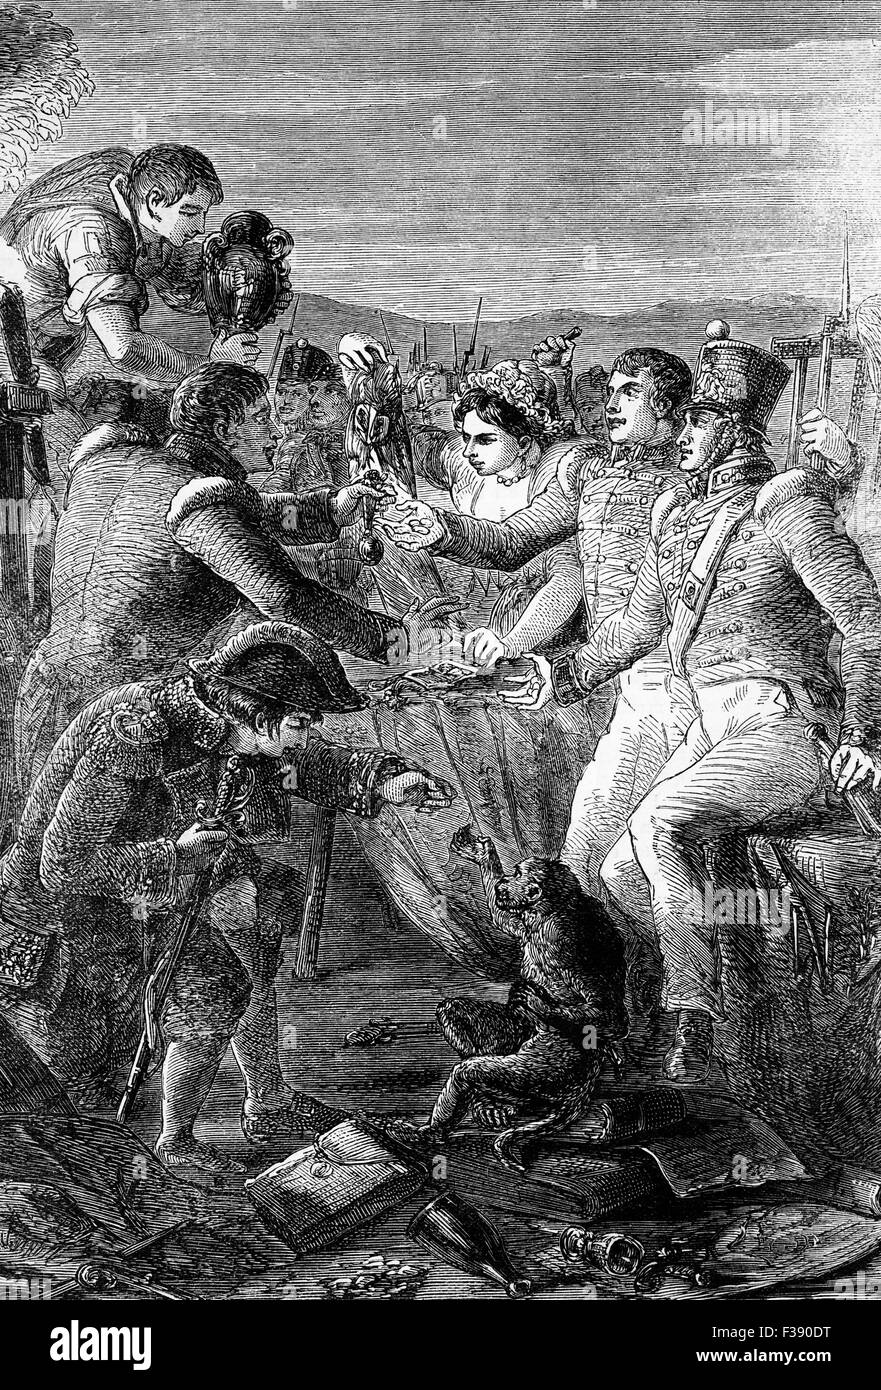 Les troupes britanniques et espagnoles partage des richesses après la Bataille de Vitoria (21 juin 1813) lorsqu'un Britannique alliées, portugais et espagnol armée sous le général Marquis de Wellington (Duc de Wellington) a battu l'armée française menant à une éventuelle victoire dans la Guerre Péninsulaire. Banque D'Images